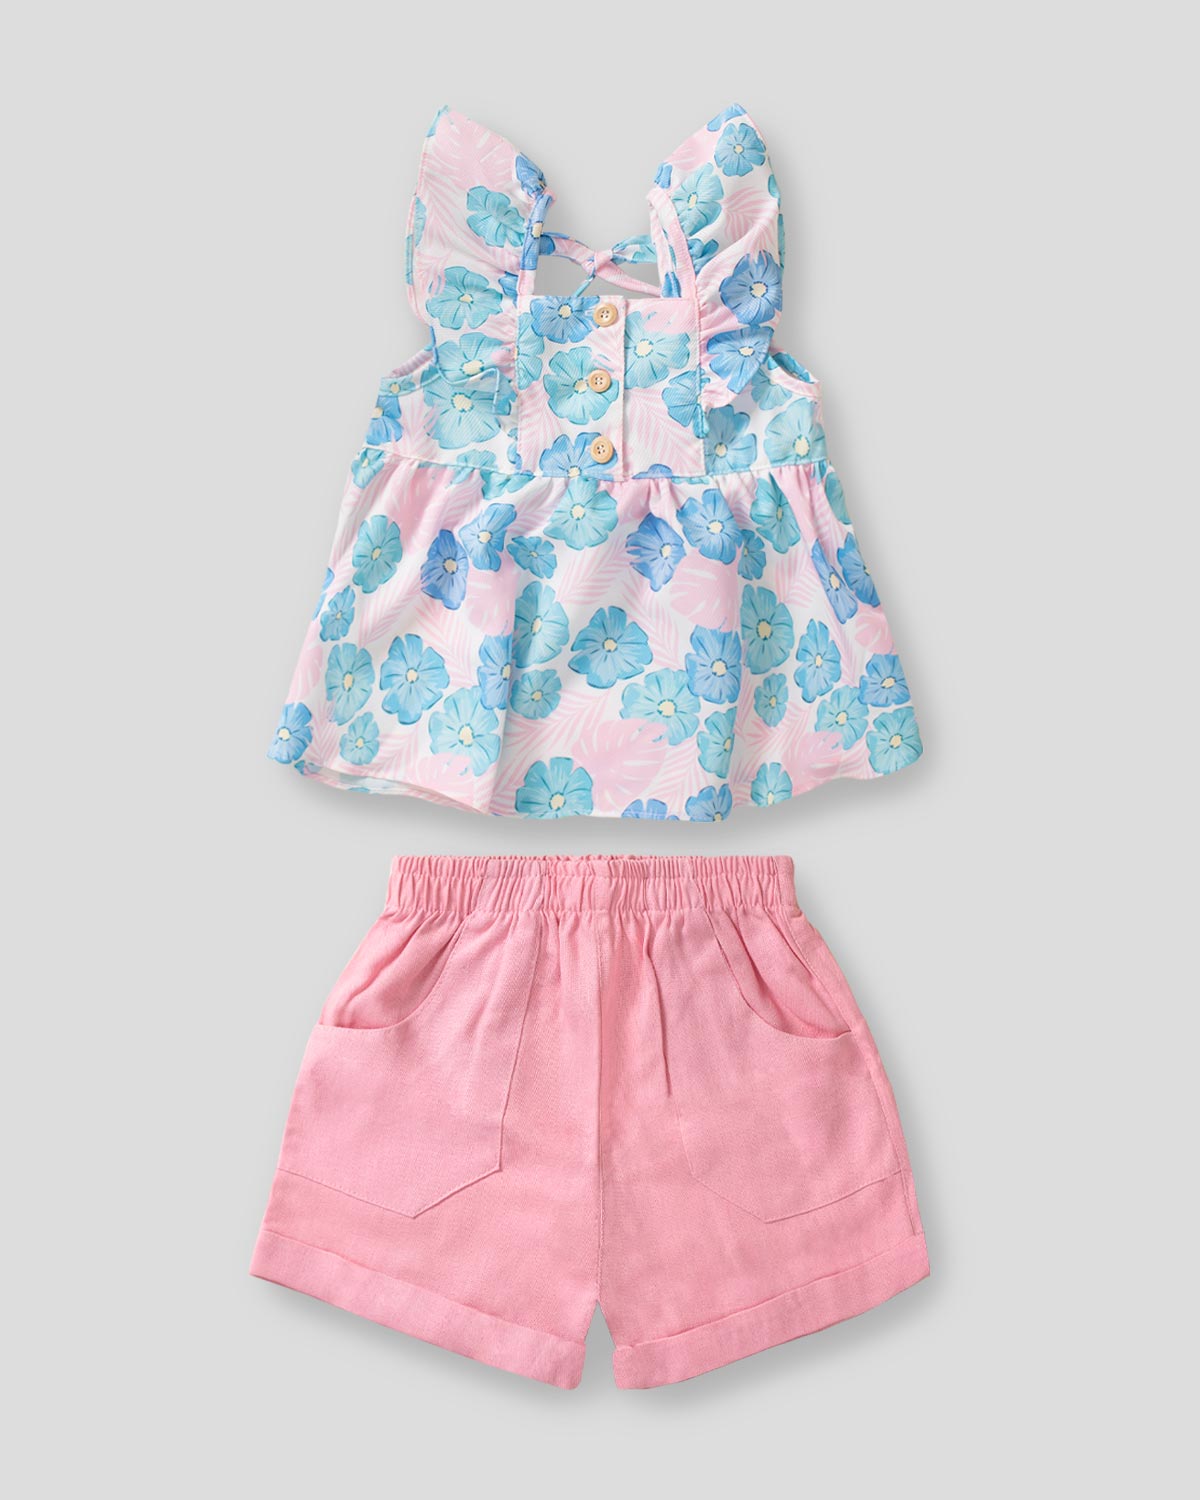 Conjunto blusa de flores con boleros en hombro y short rosa para niña 